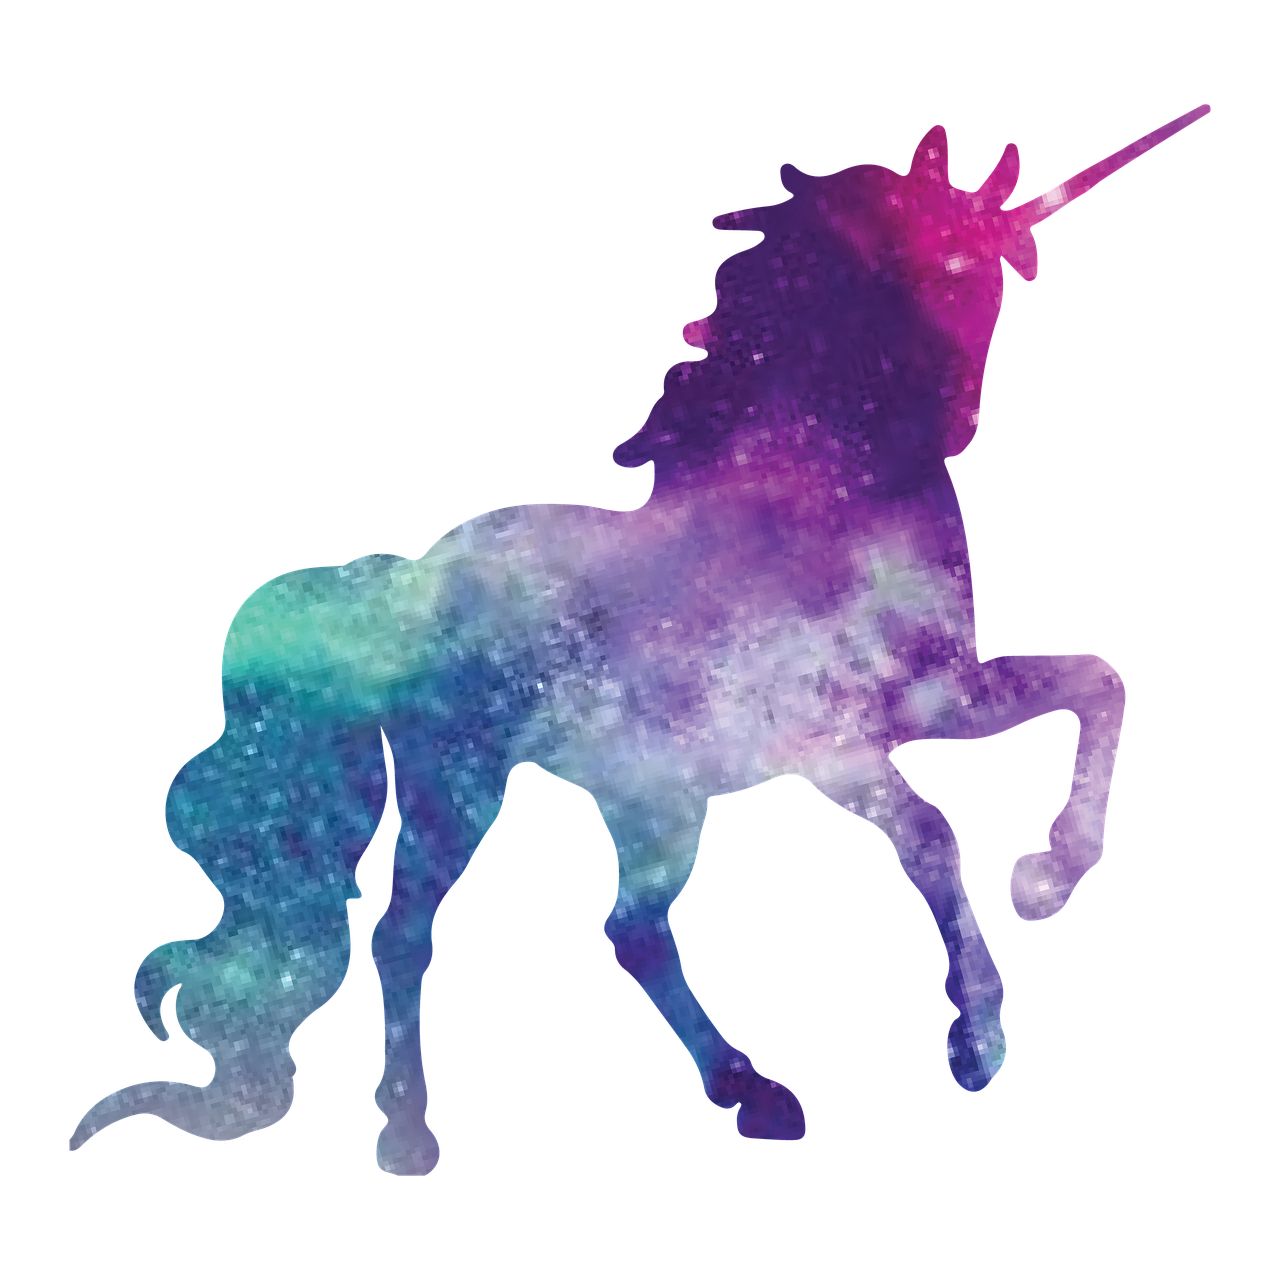 Free image on pixabay. Clipart unicorn magic